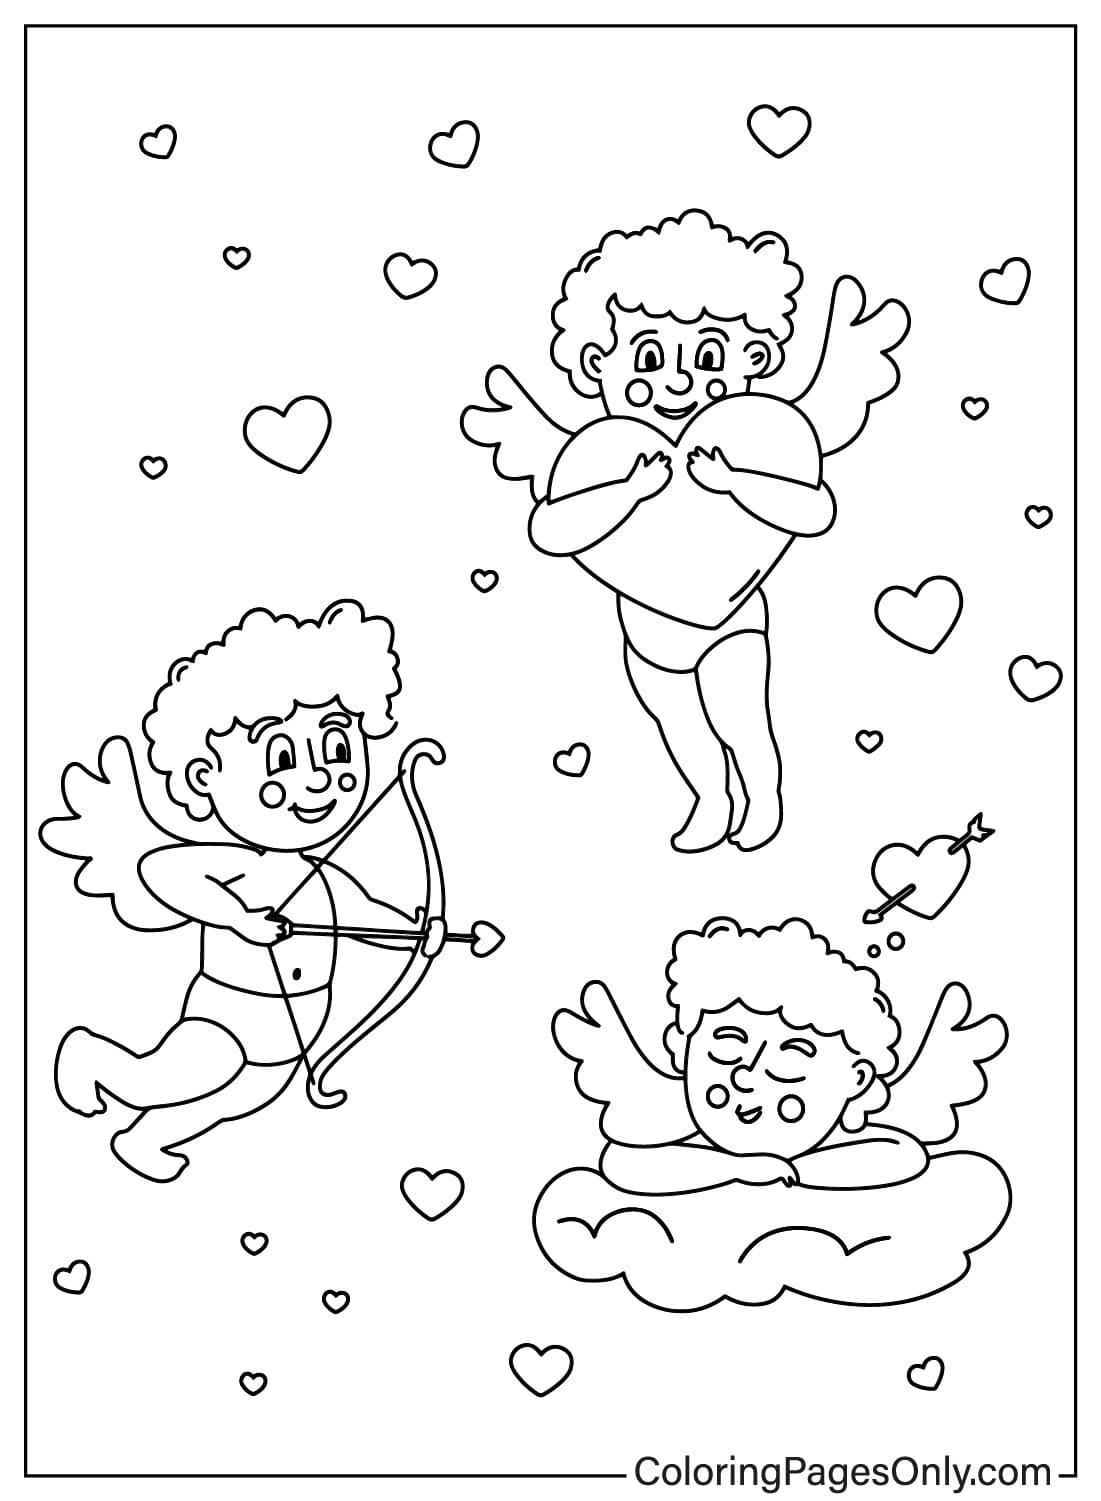 Página para colorear de Cupido gratis de Cupido